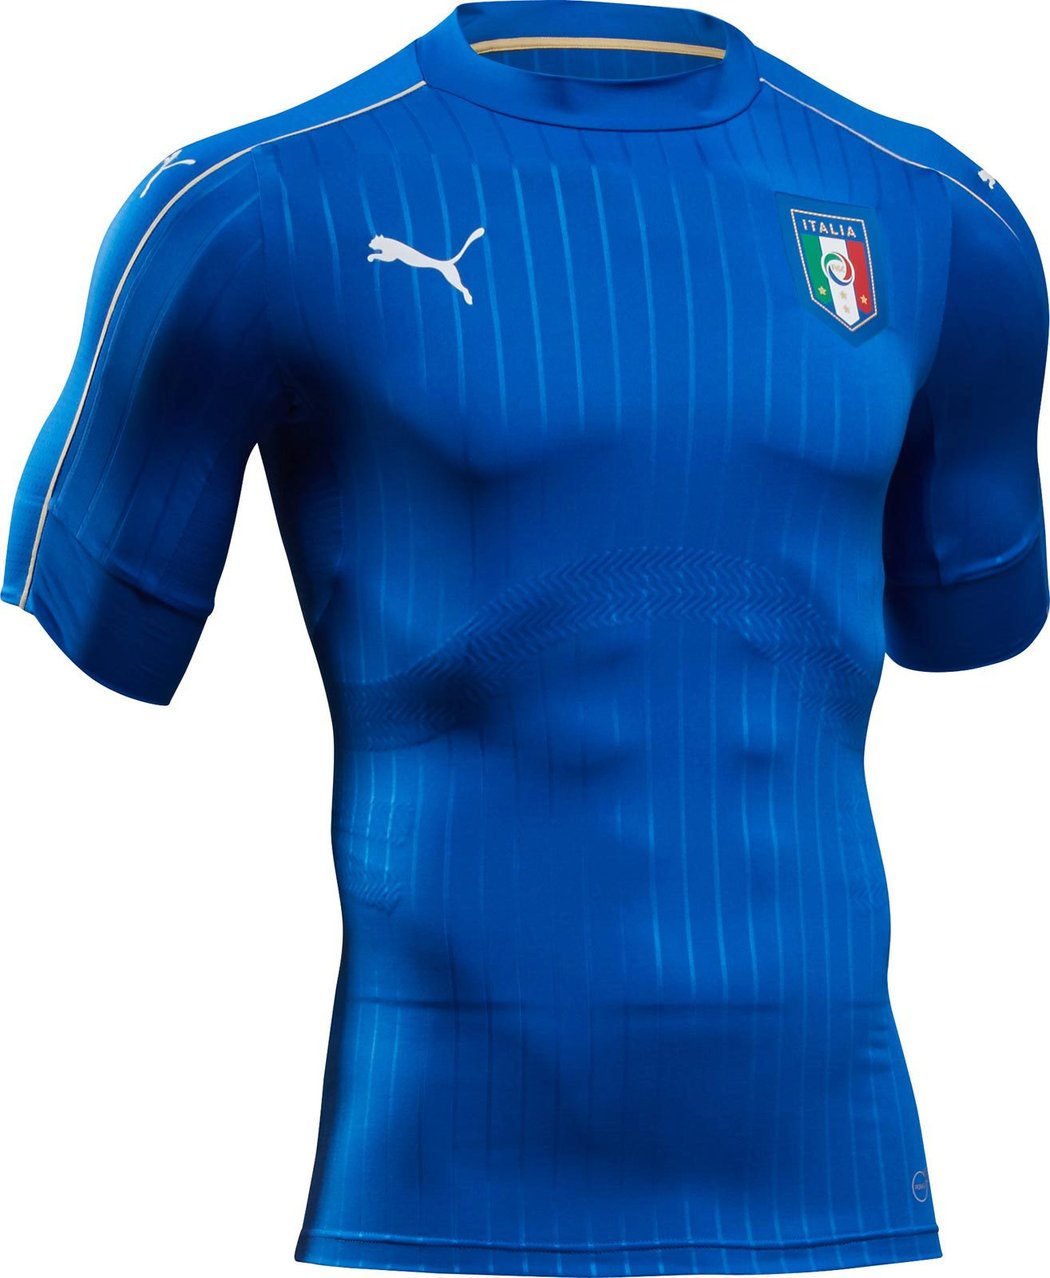 Hlavní sada dresů Itálie